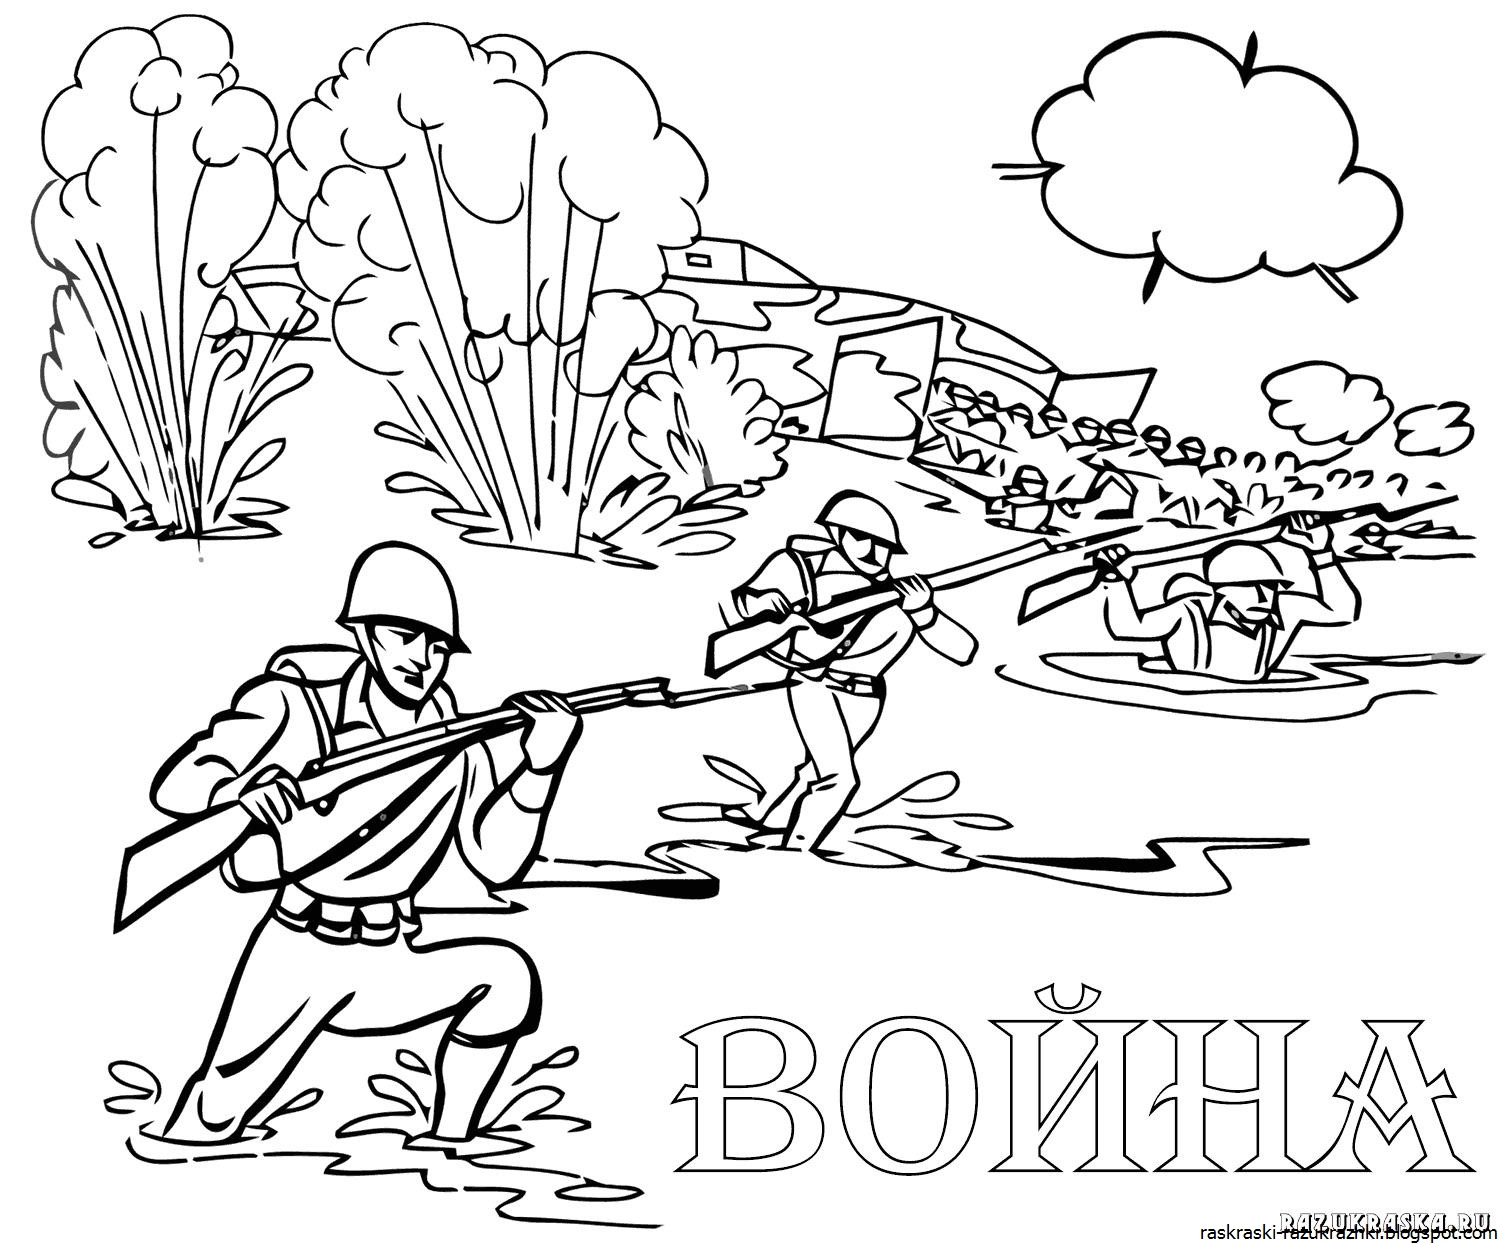 Раскраски "Великая Отечественная Война" | Картотека: | Образовательная социальная сеть